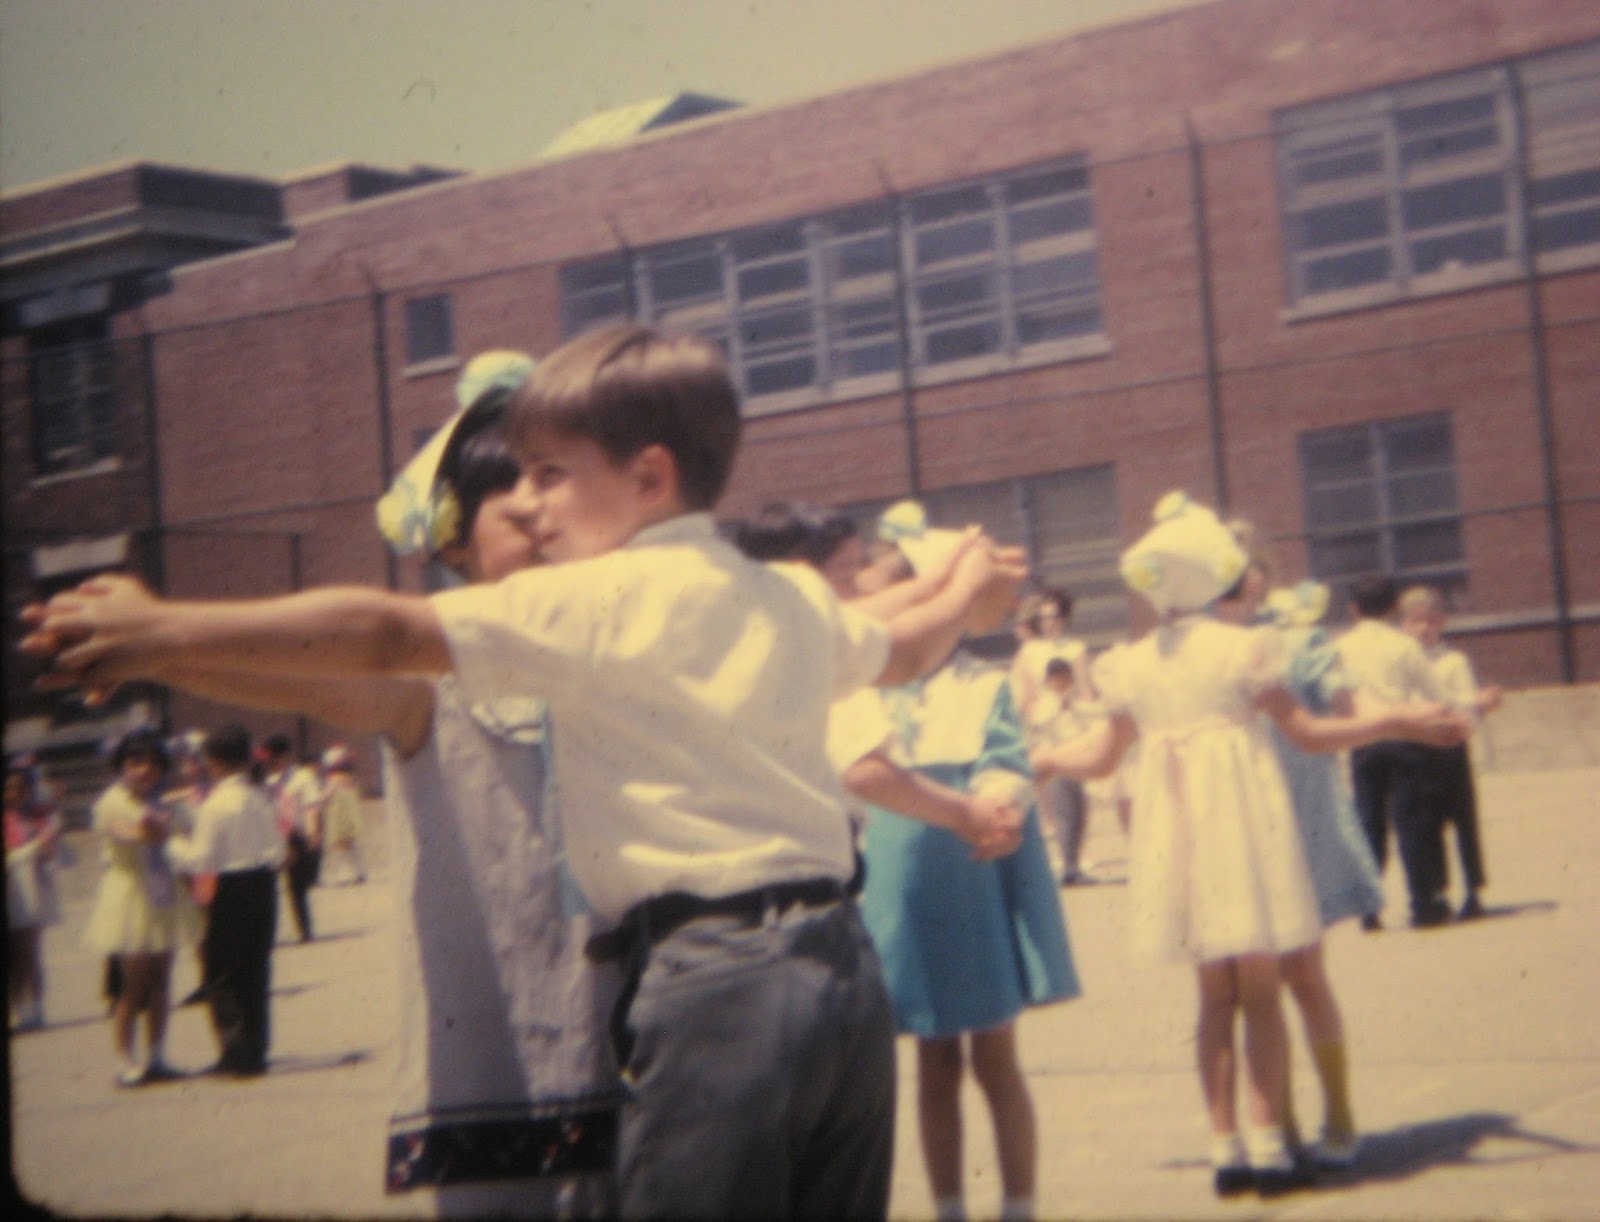 Tommy Mondello at age 7 square dance PS22 June 1968